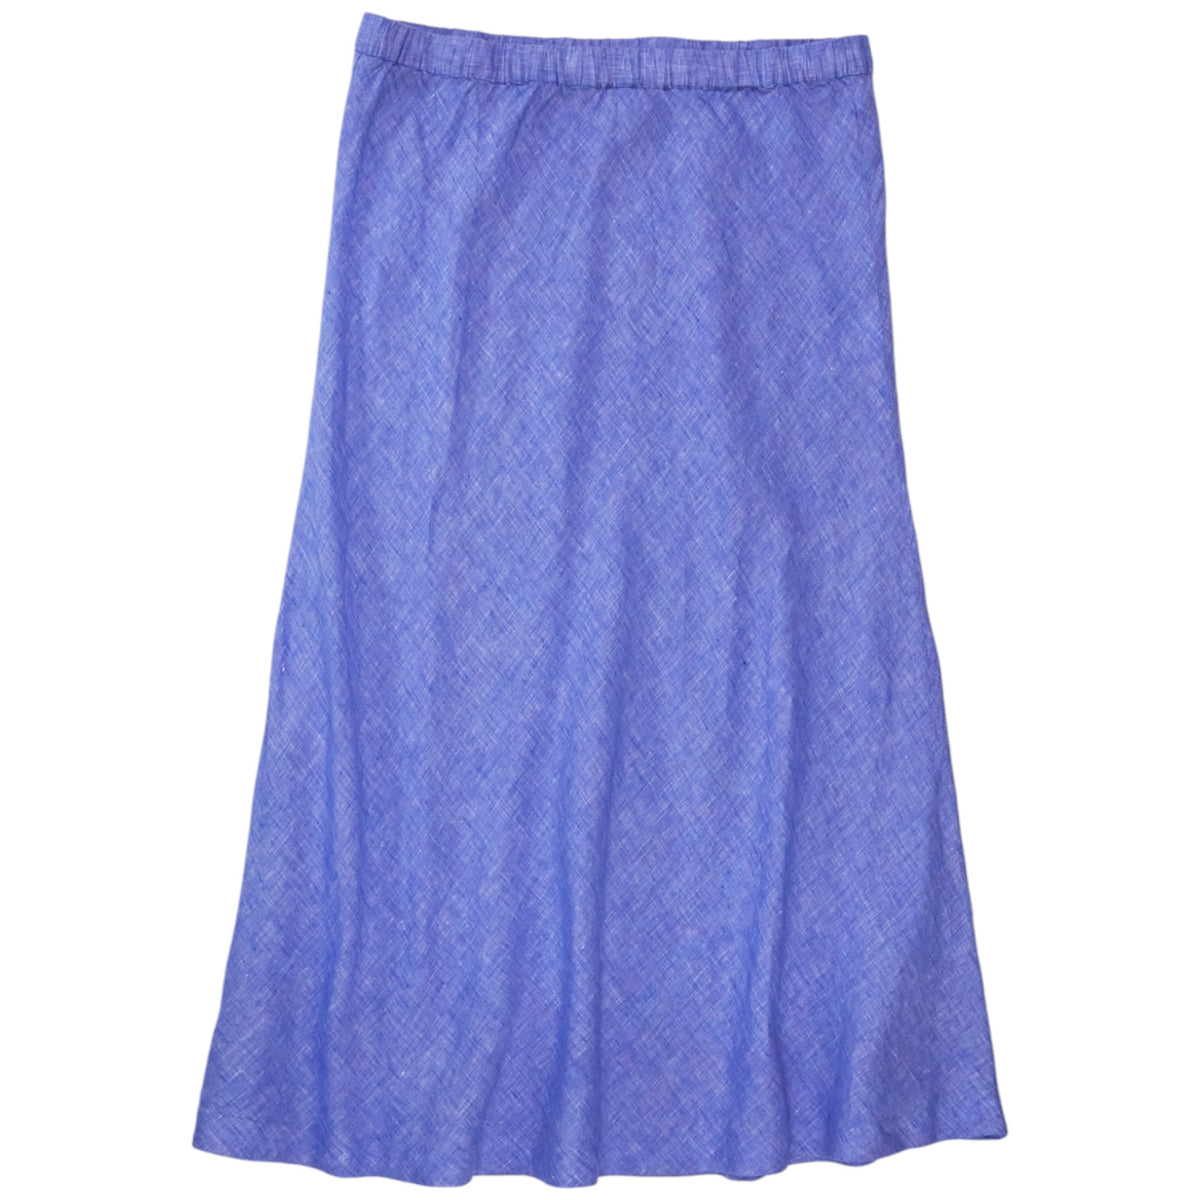 NRBY Blue Tabby Linen Skirt